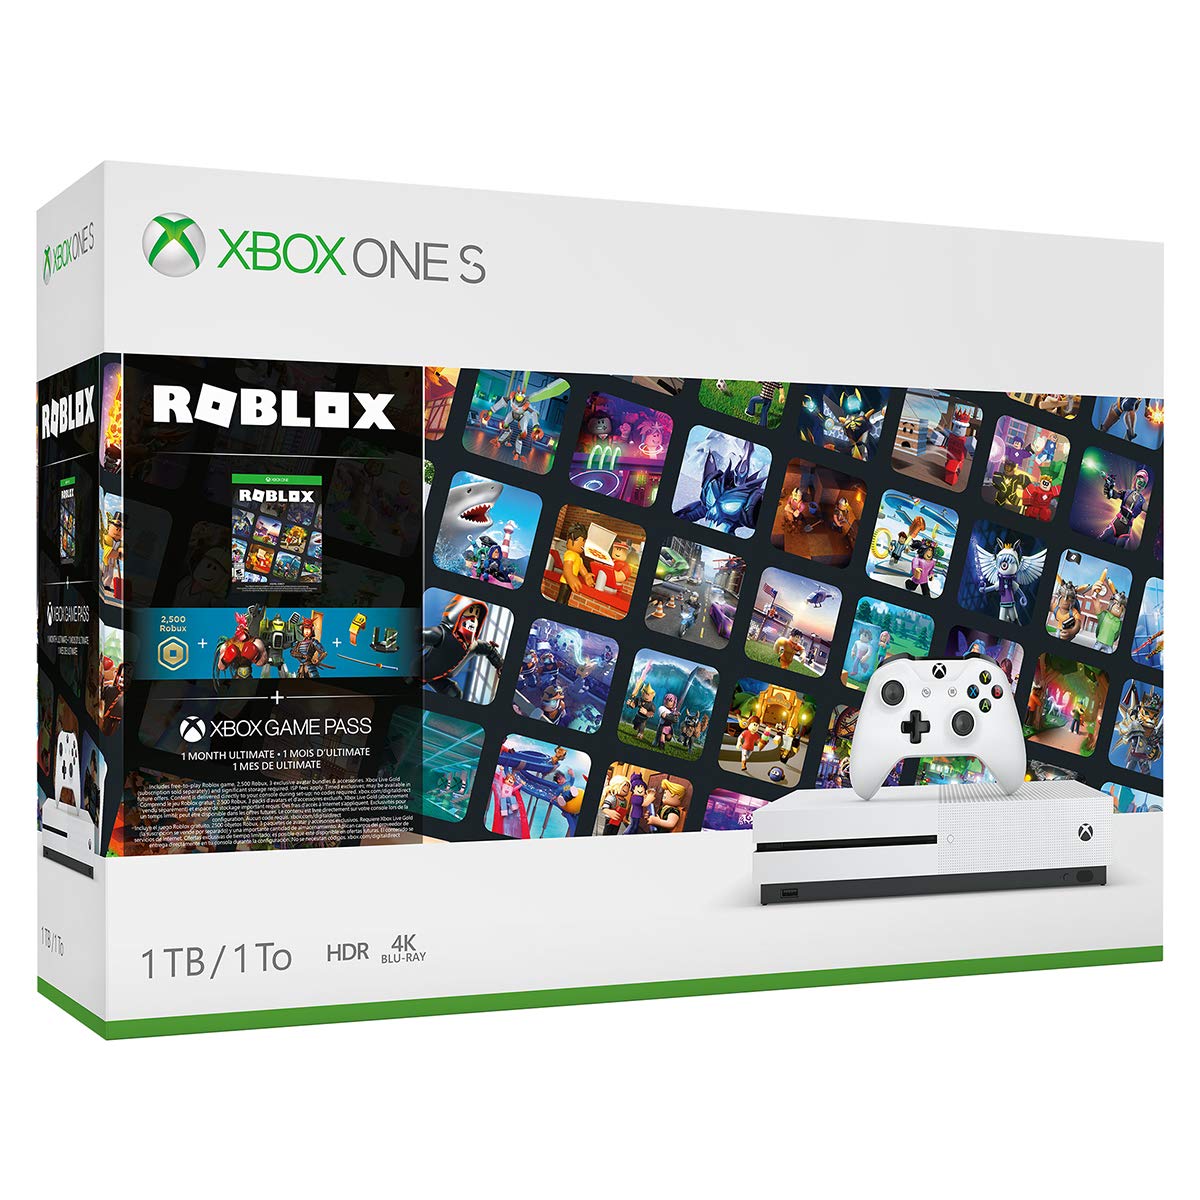 Microsoft Xbox One S 1TB Console - Roblox Bundle cho phép bạn thỏa sức khám phá thế giới game và trải nghiệm Roblox một cách tuyệt vời nhất. Đến với Xbox One S, bạn sẽ được truy cập miễn phí vào hàng ngàn trò chơi và giải trí đa dạng.